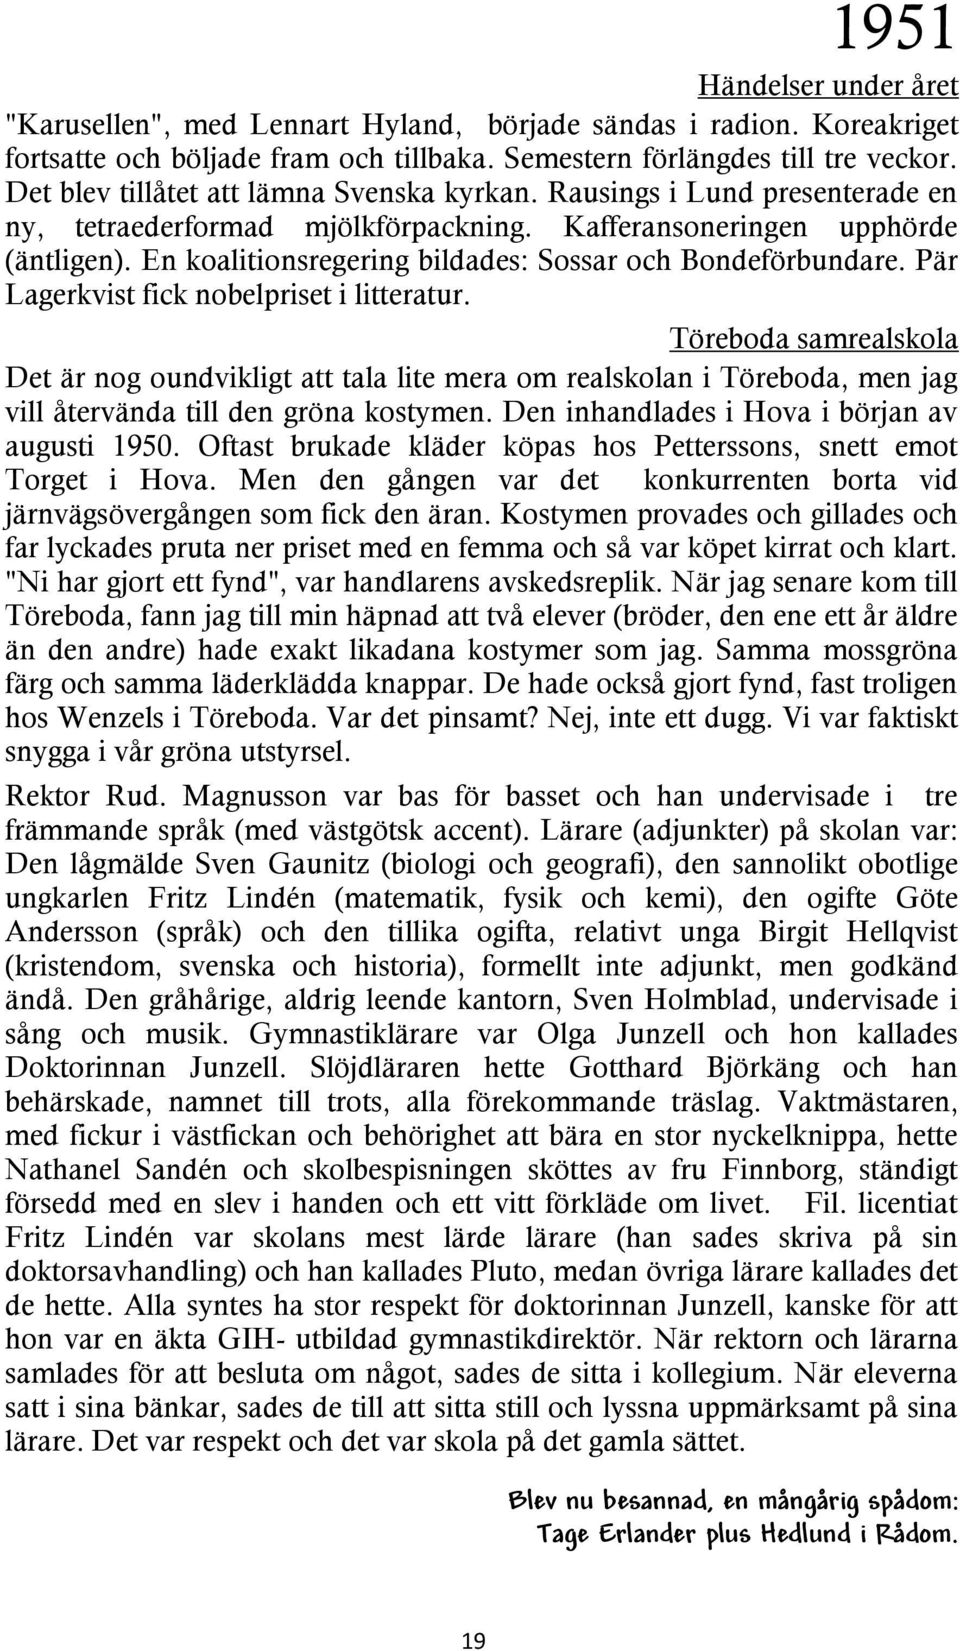 En koalitionsregering bildades: Sossar och Bondeförbundare. Pär Lagerkvist fick nobelpriset i litteratur.